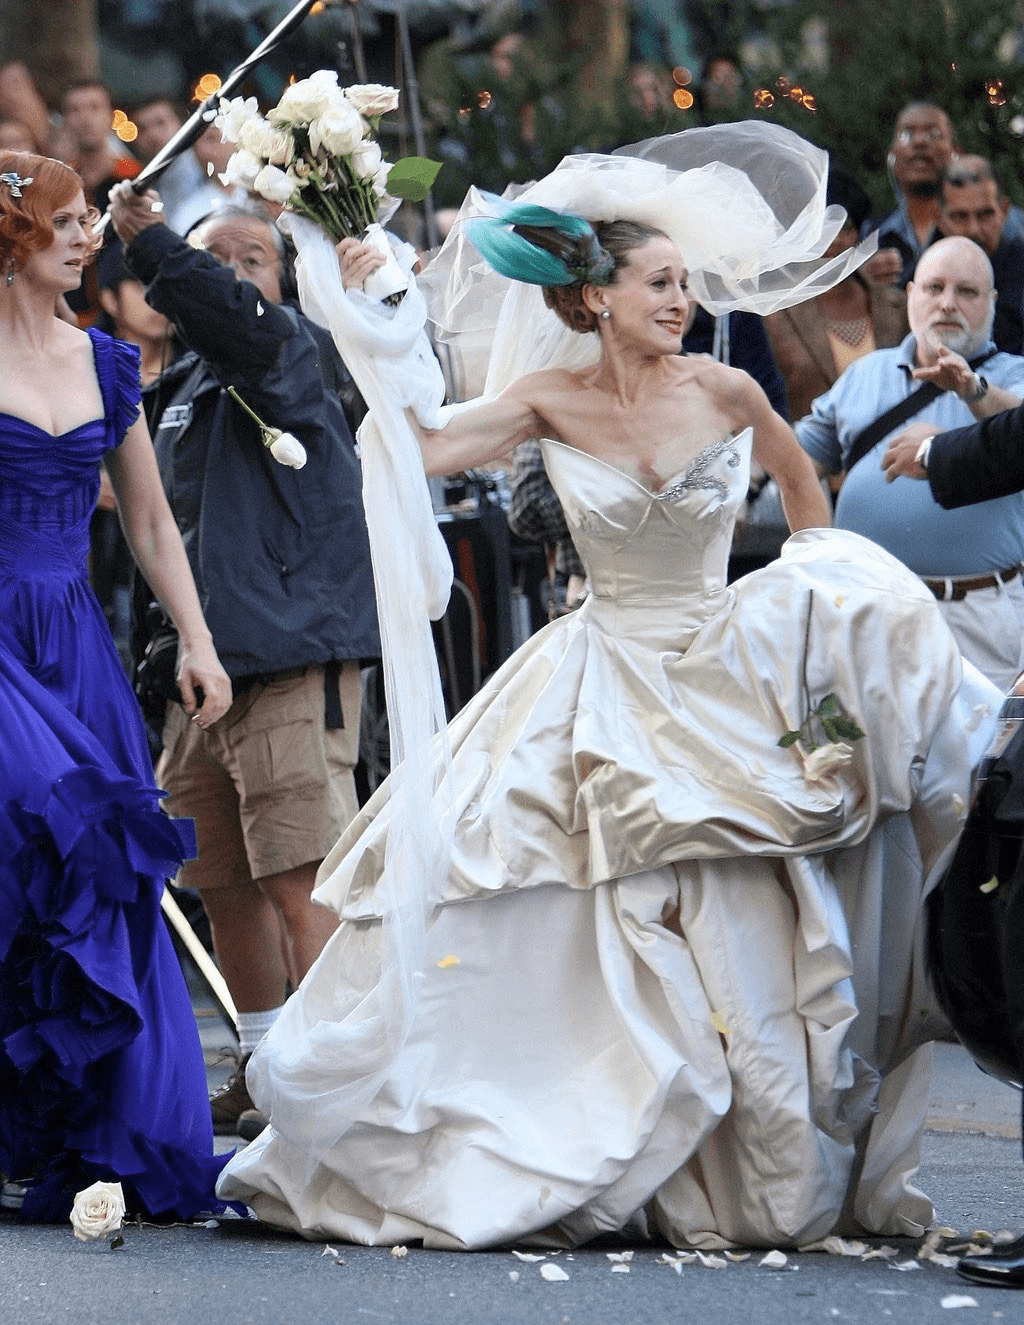 ЖМЖ измена невесты перед свадьбой с друзьями будущего мужа